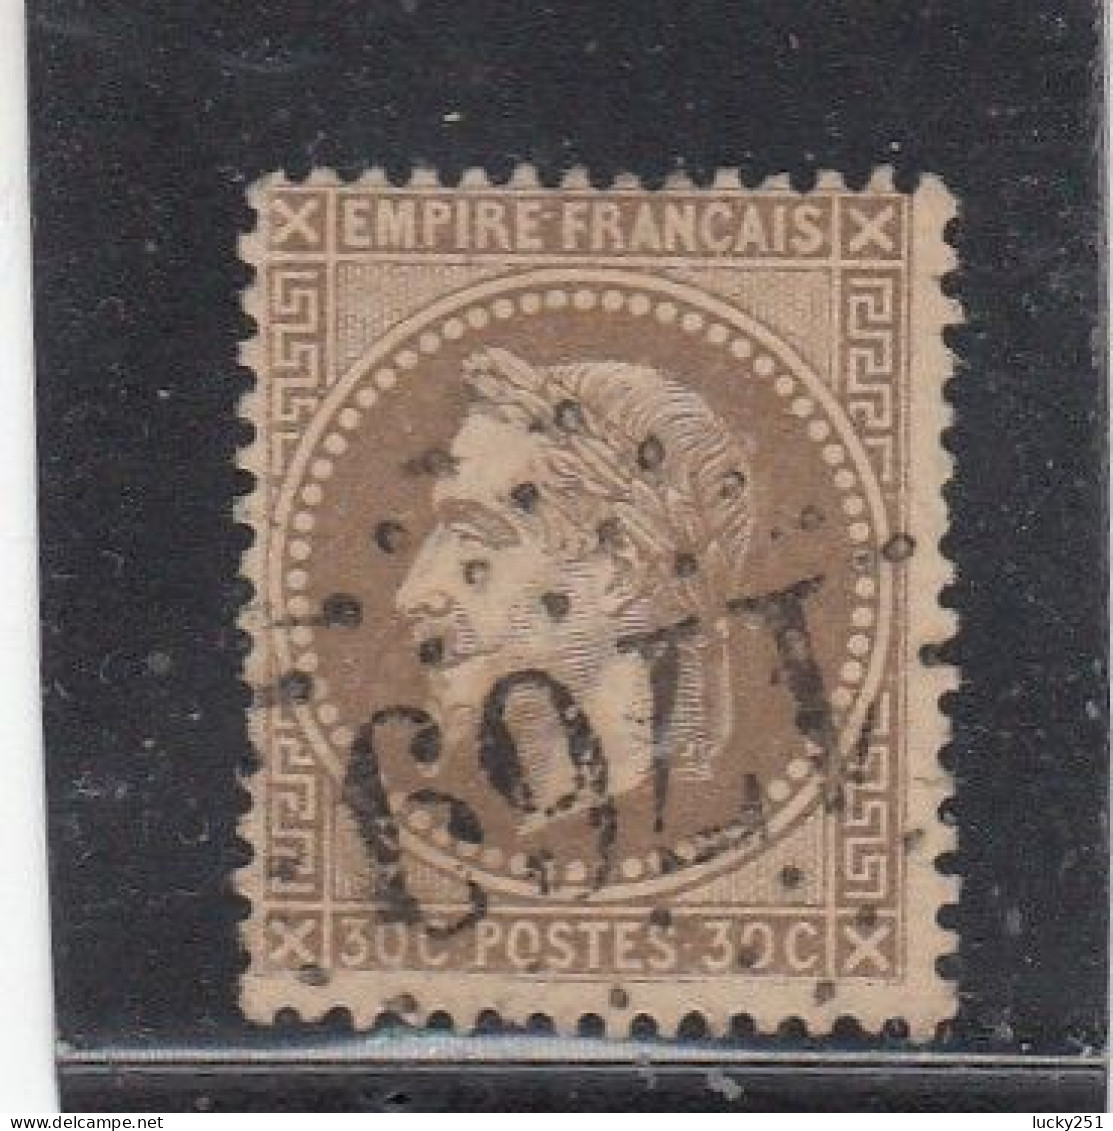 France - Année 1863/70 - N°YT 30 - Type Empire Lauré - Oblitération GC - 1863-1870 Napoleon III With Laurels